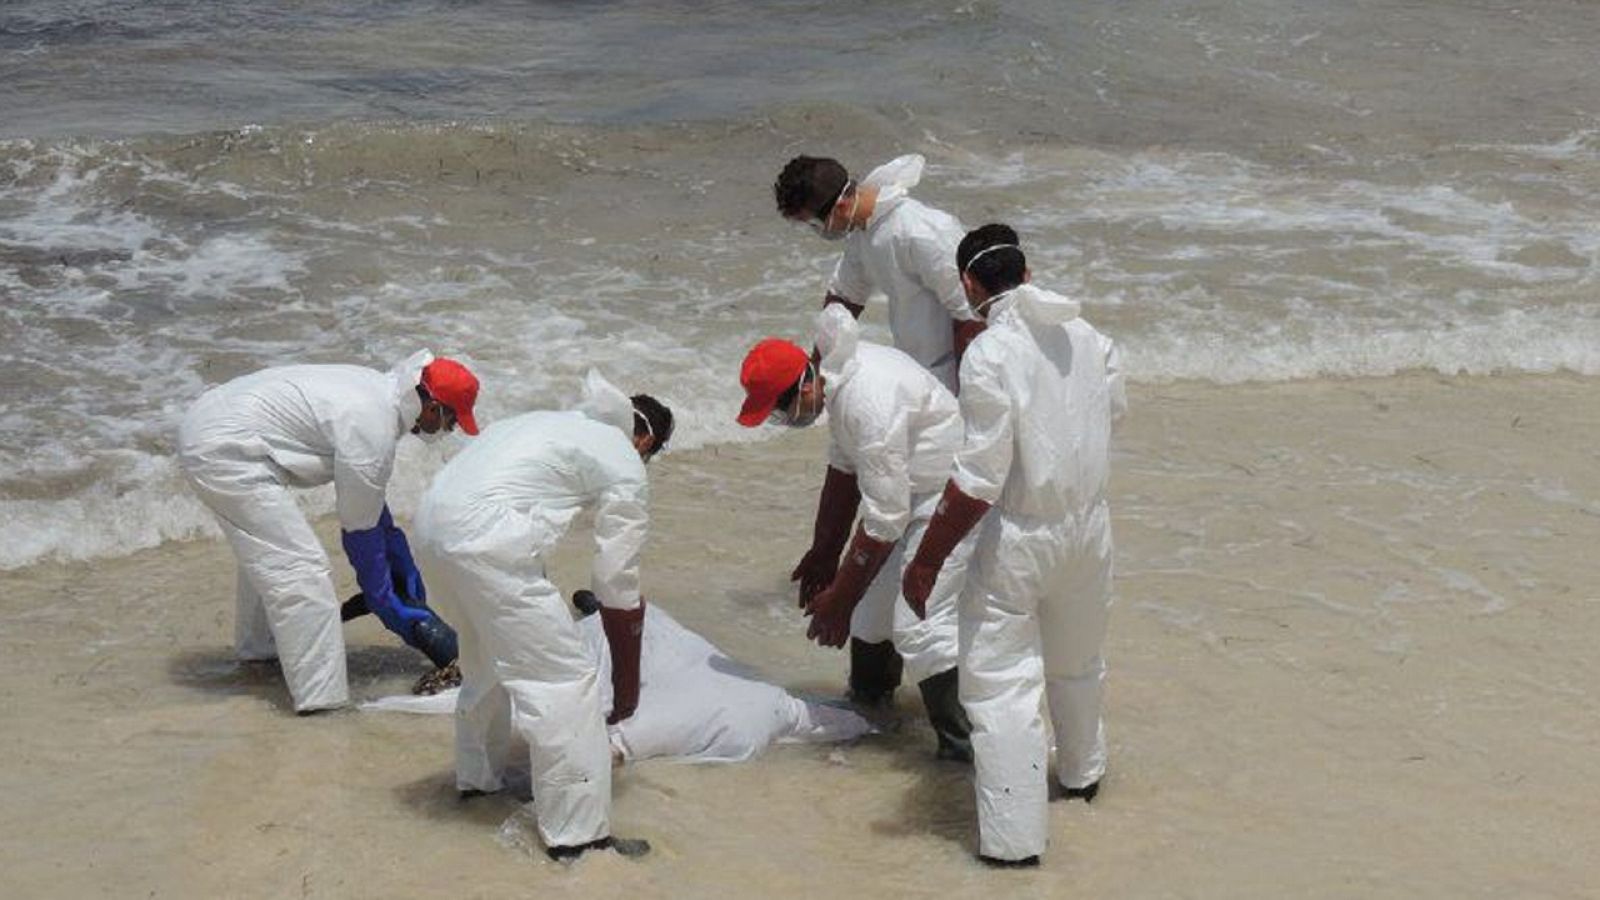 Voluntarios de la Media Luna Roja recojen el cuerpo de un migrante muerto en la playa libia de Zuwara